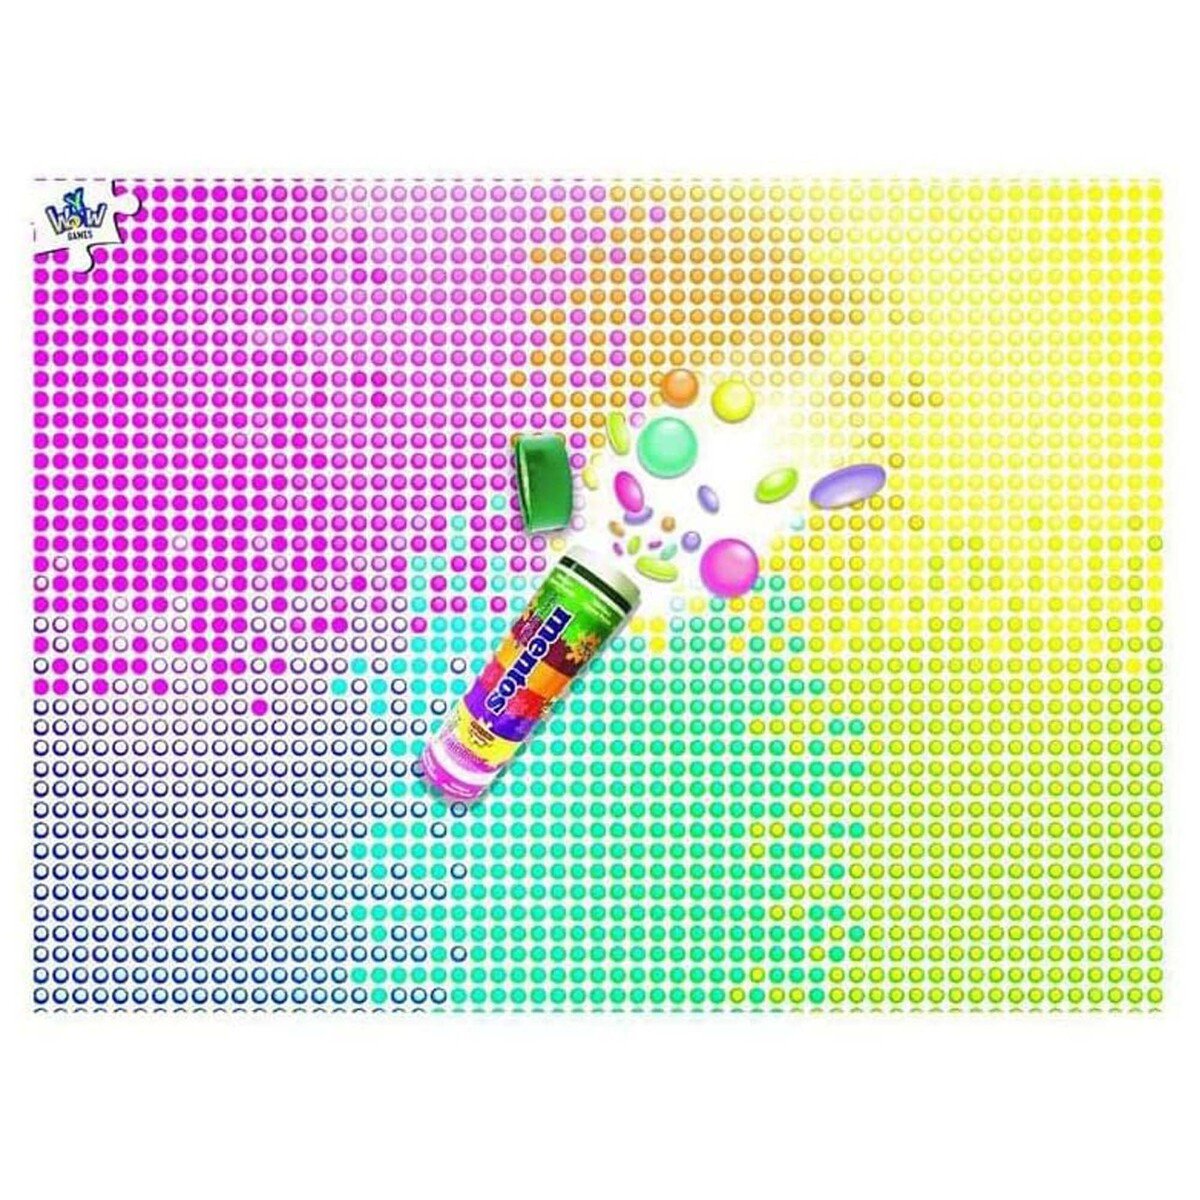 Supersized Puzzles - Mentos Rainbow Puzzles 1000pcs 200271A